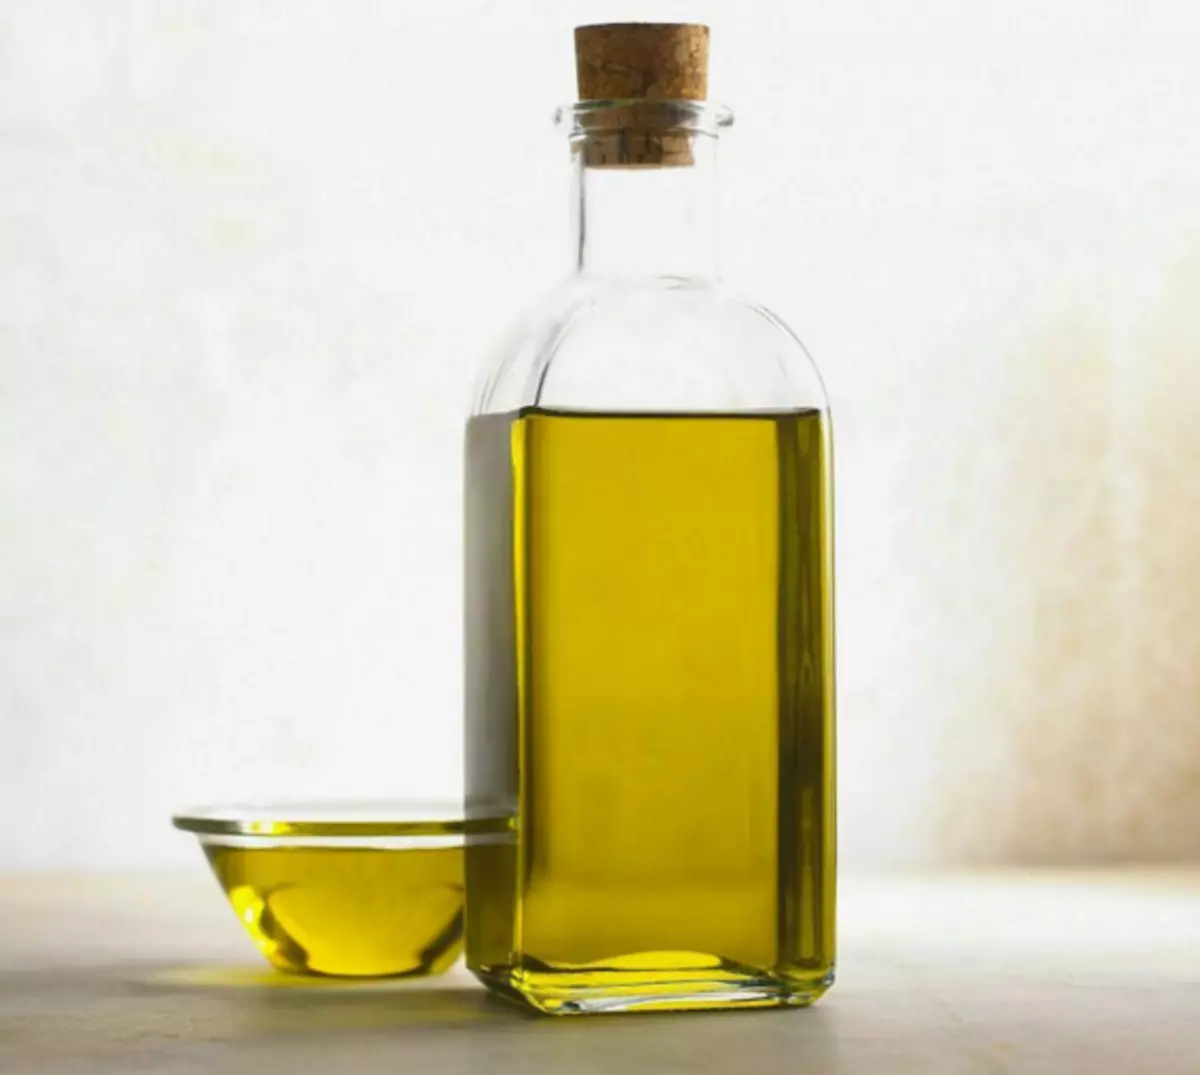 Gli italiani probabilmente preferiranno olio per capelli biologici rispetto a un balsamo di fabbrica